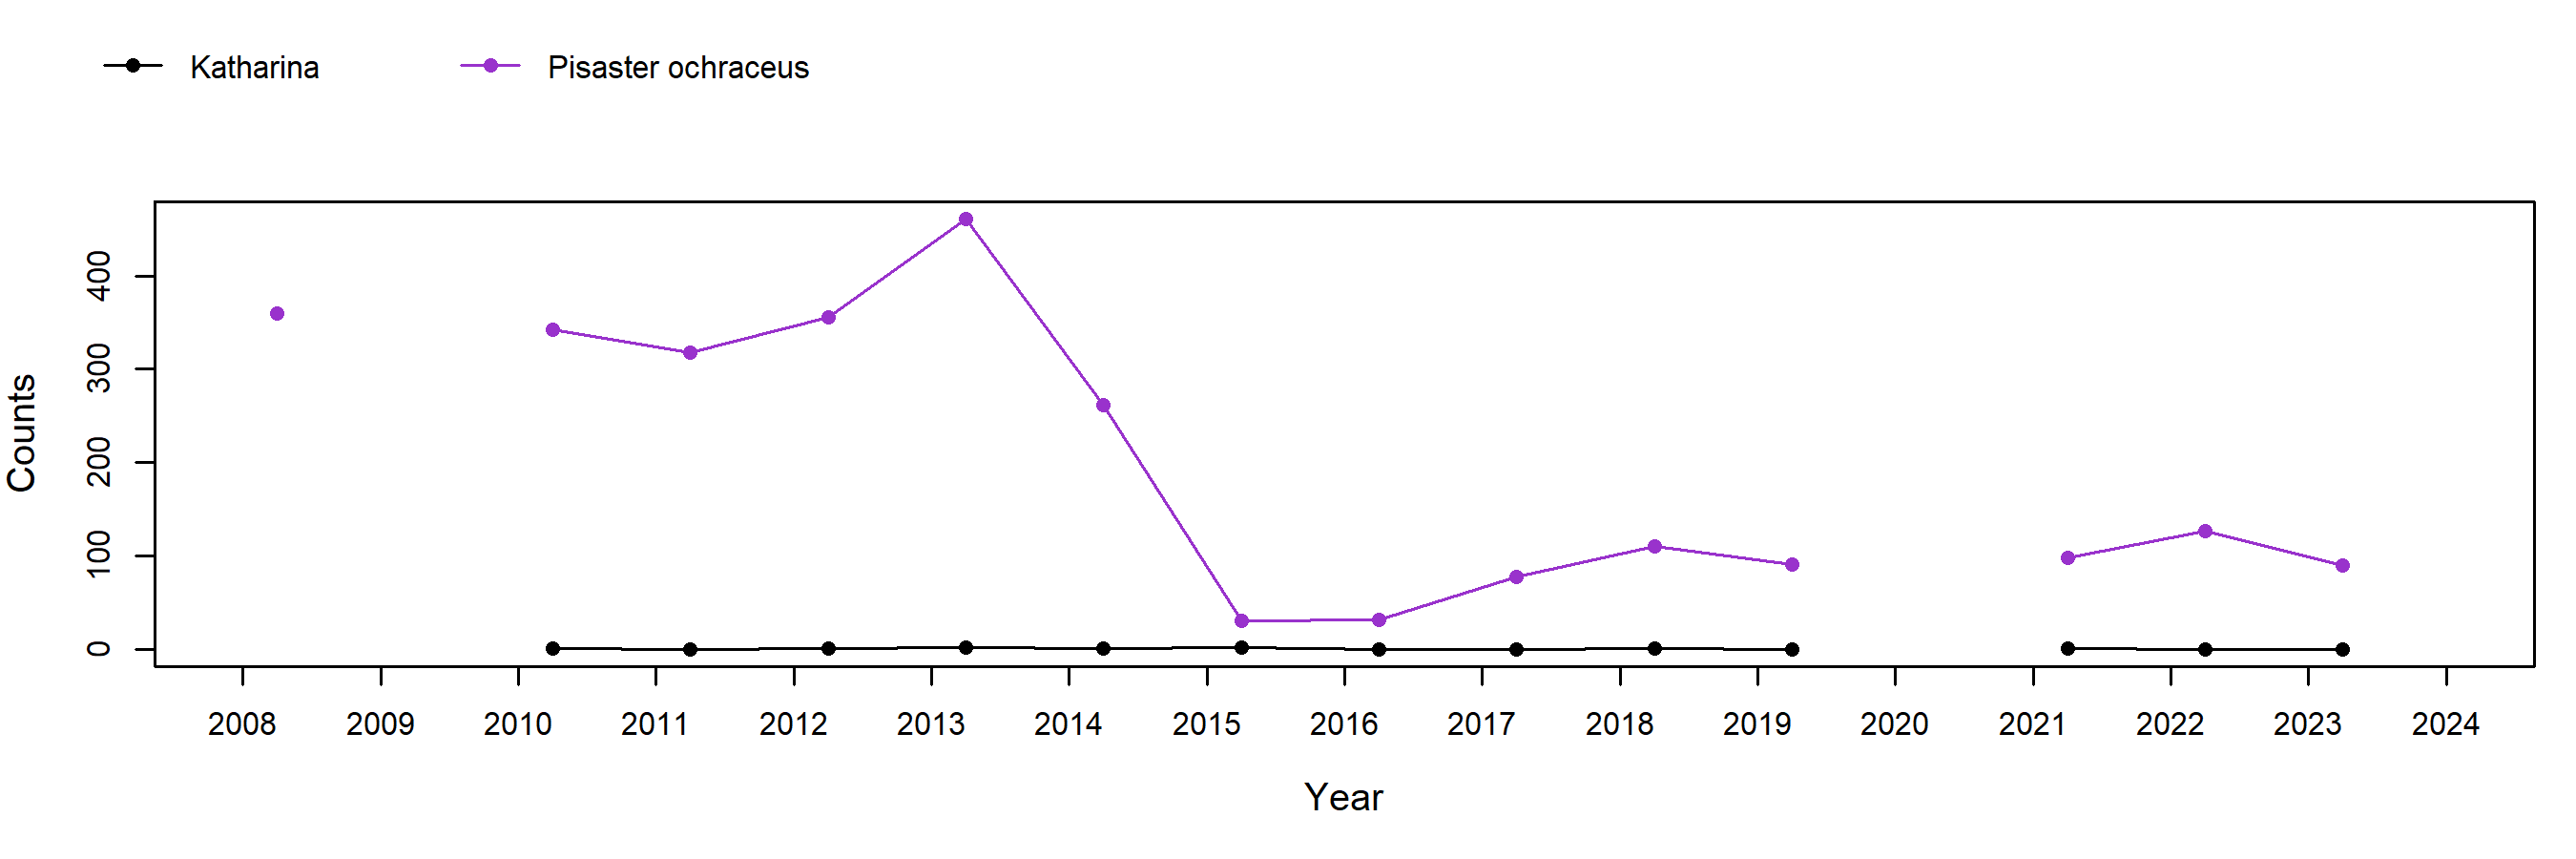 Point Grenville Pisaster trend plot